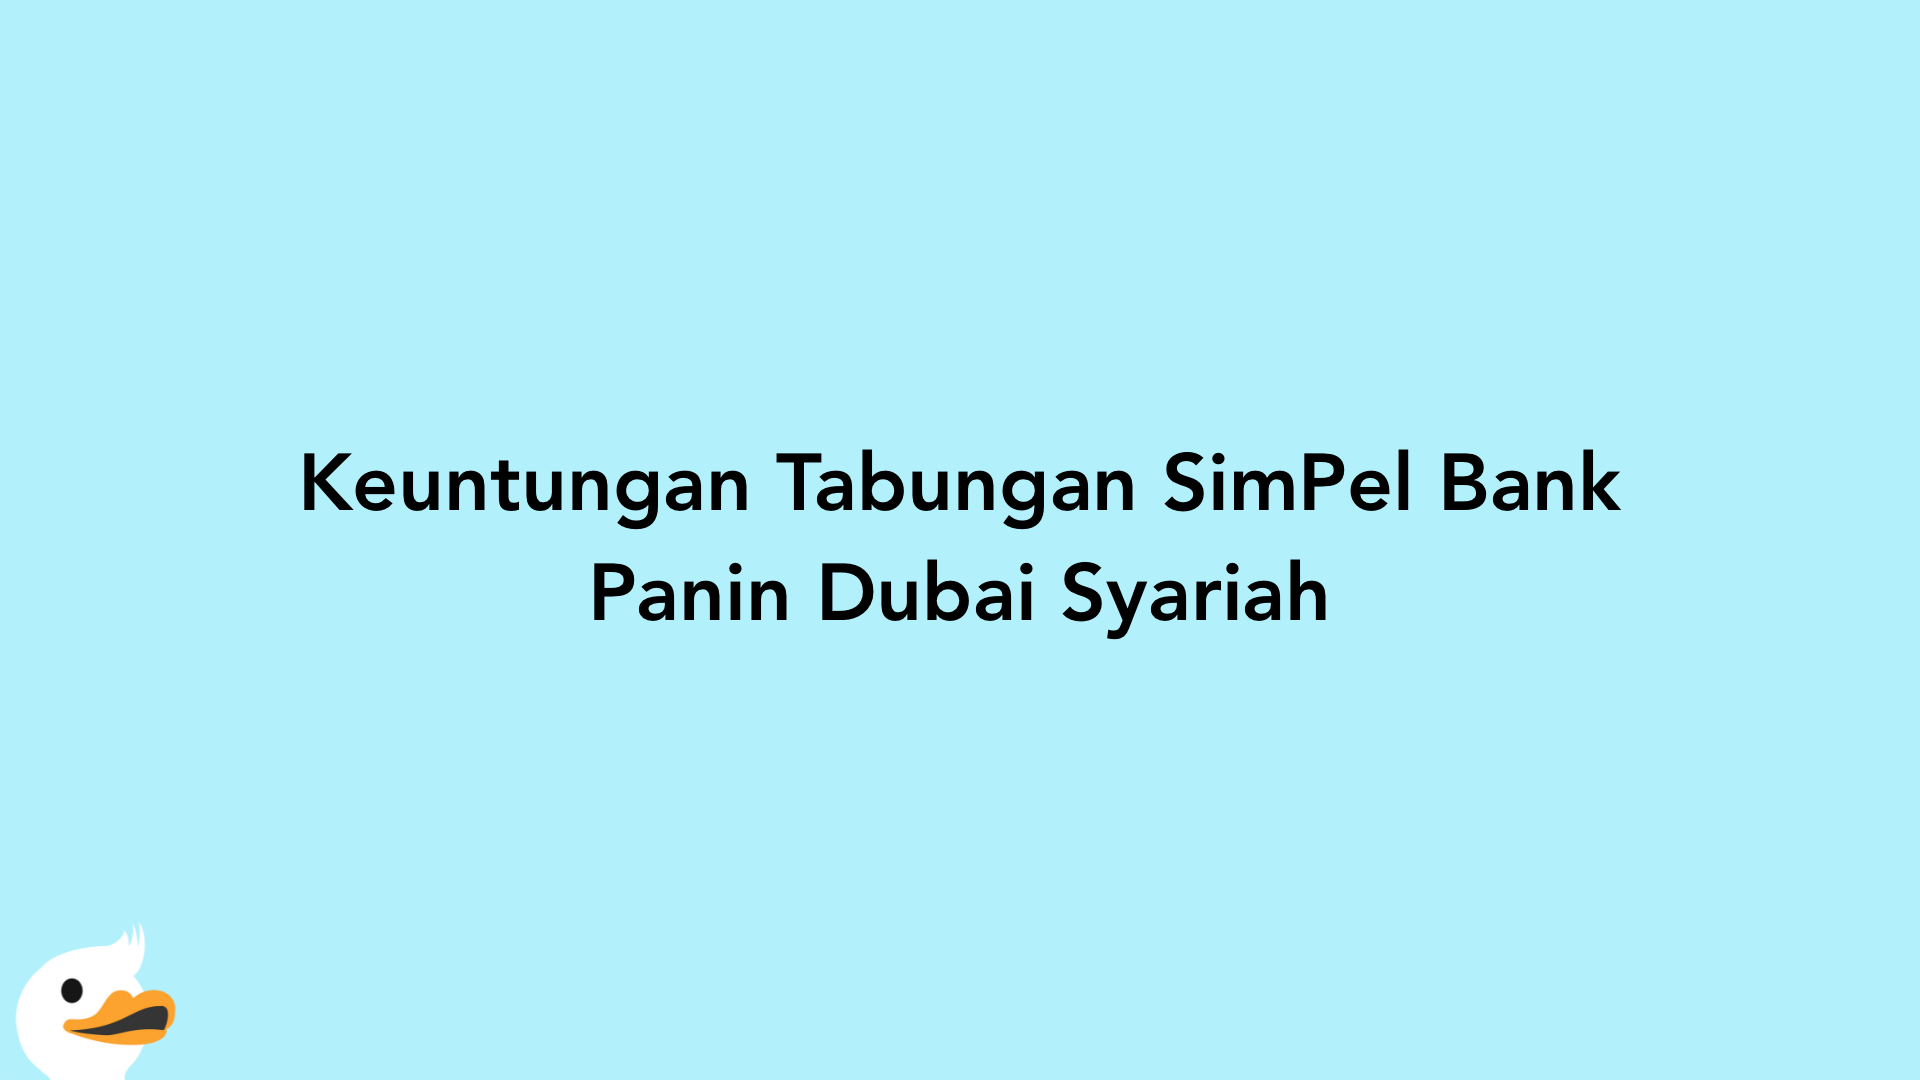 Keuntungan Tabungan SimPel Bank Panin Dubai Syariah